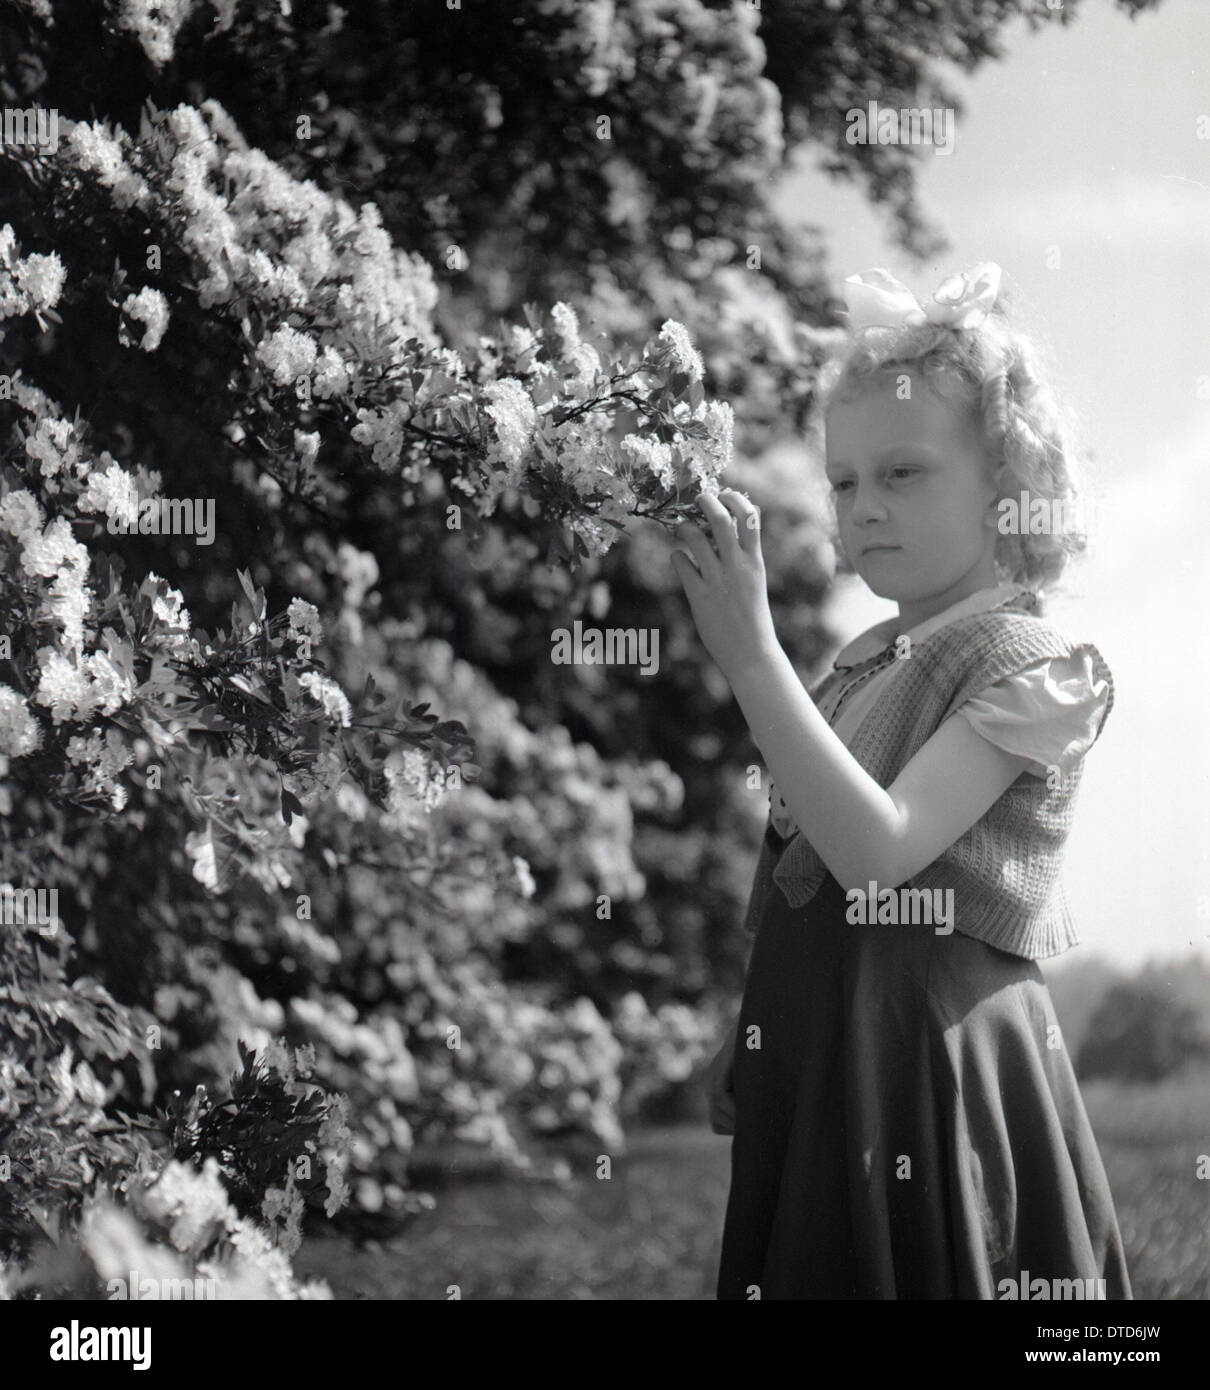 Historisches Bild von der 1950er Jahre zeigen eine hübsche junge blonde Mädchen studieren die Feder Blume oder Blüte auf einem Kirschbaum. Stockfoto